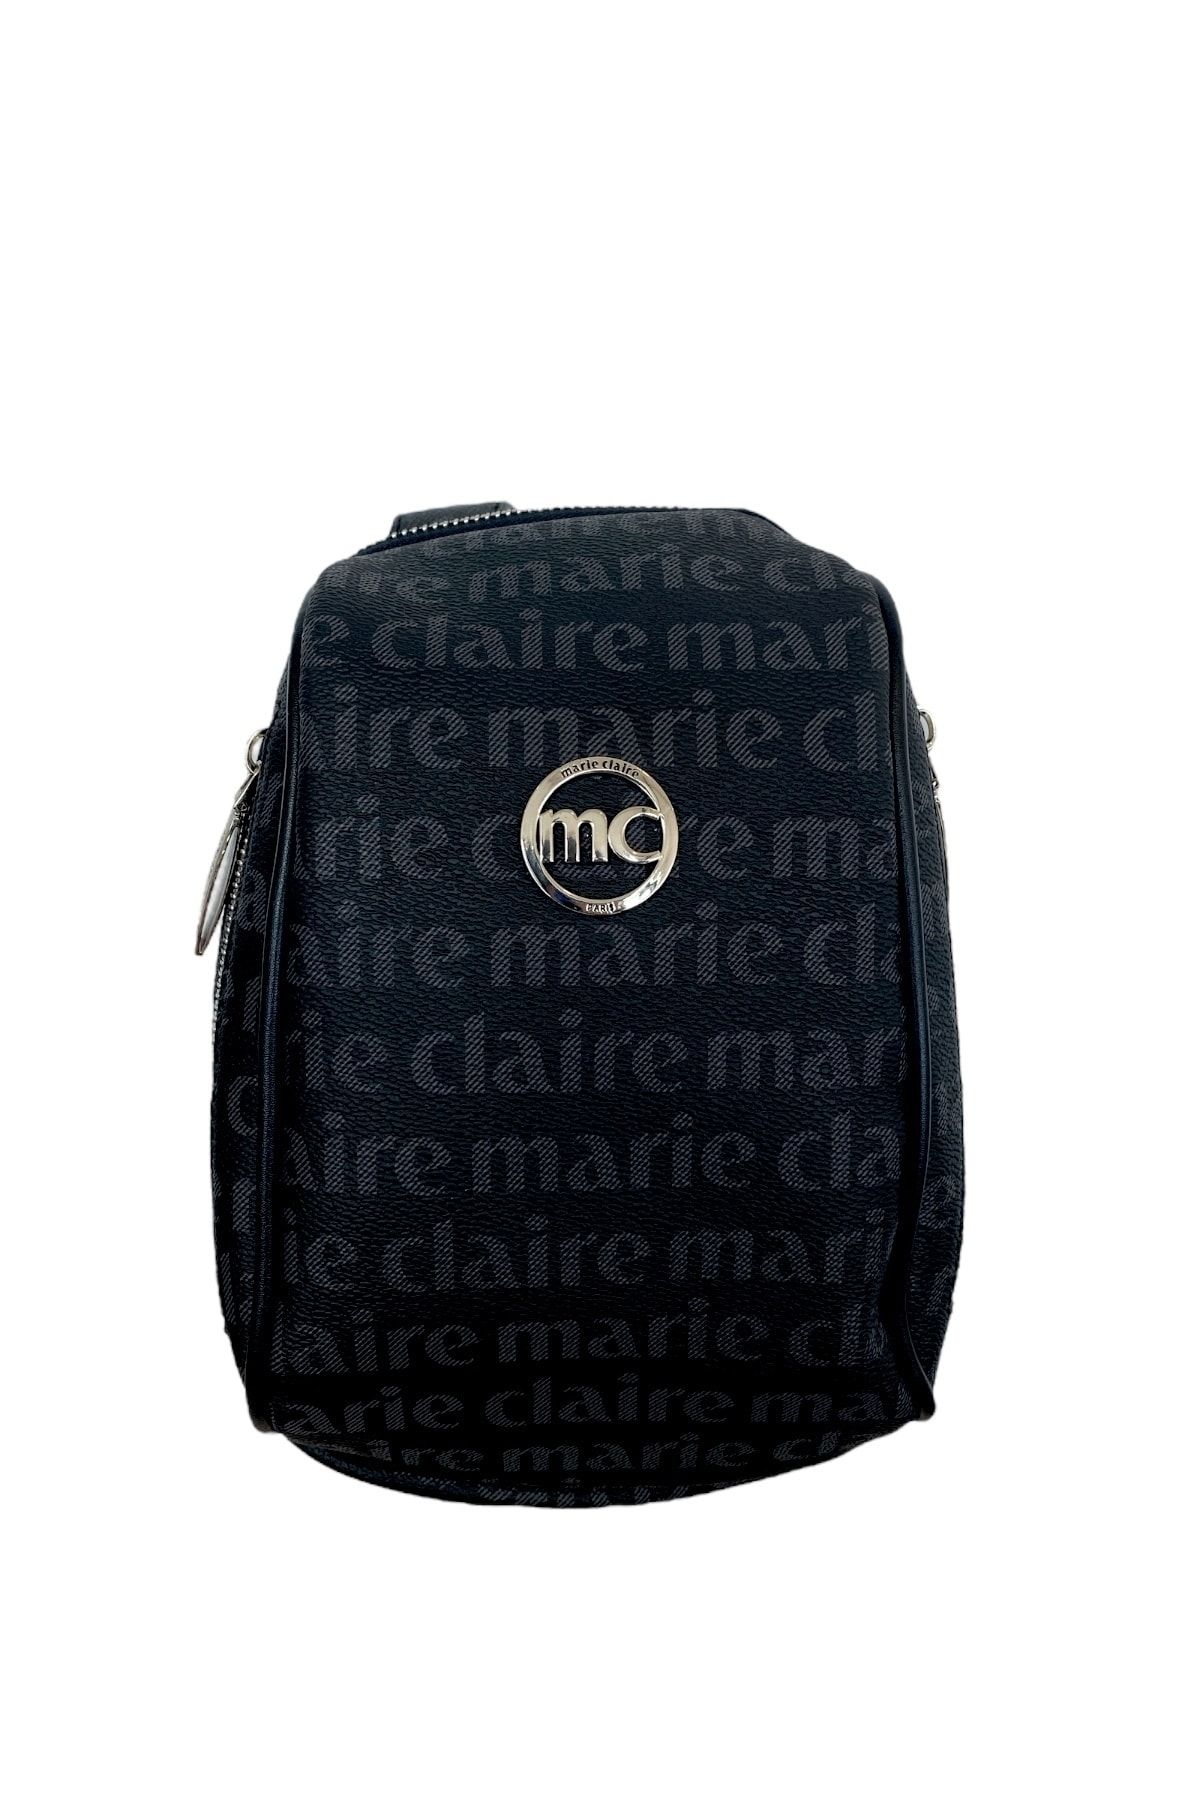 Marie Claire | Çapraz Askılı Bodybag Kadın Omuz Çantası - Siyah - Dora Mc231101685